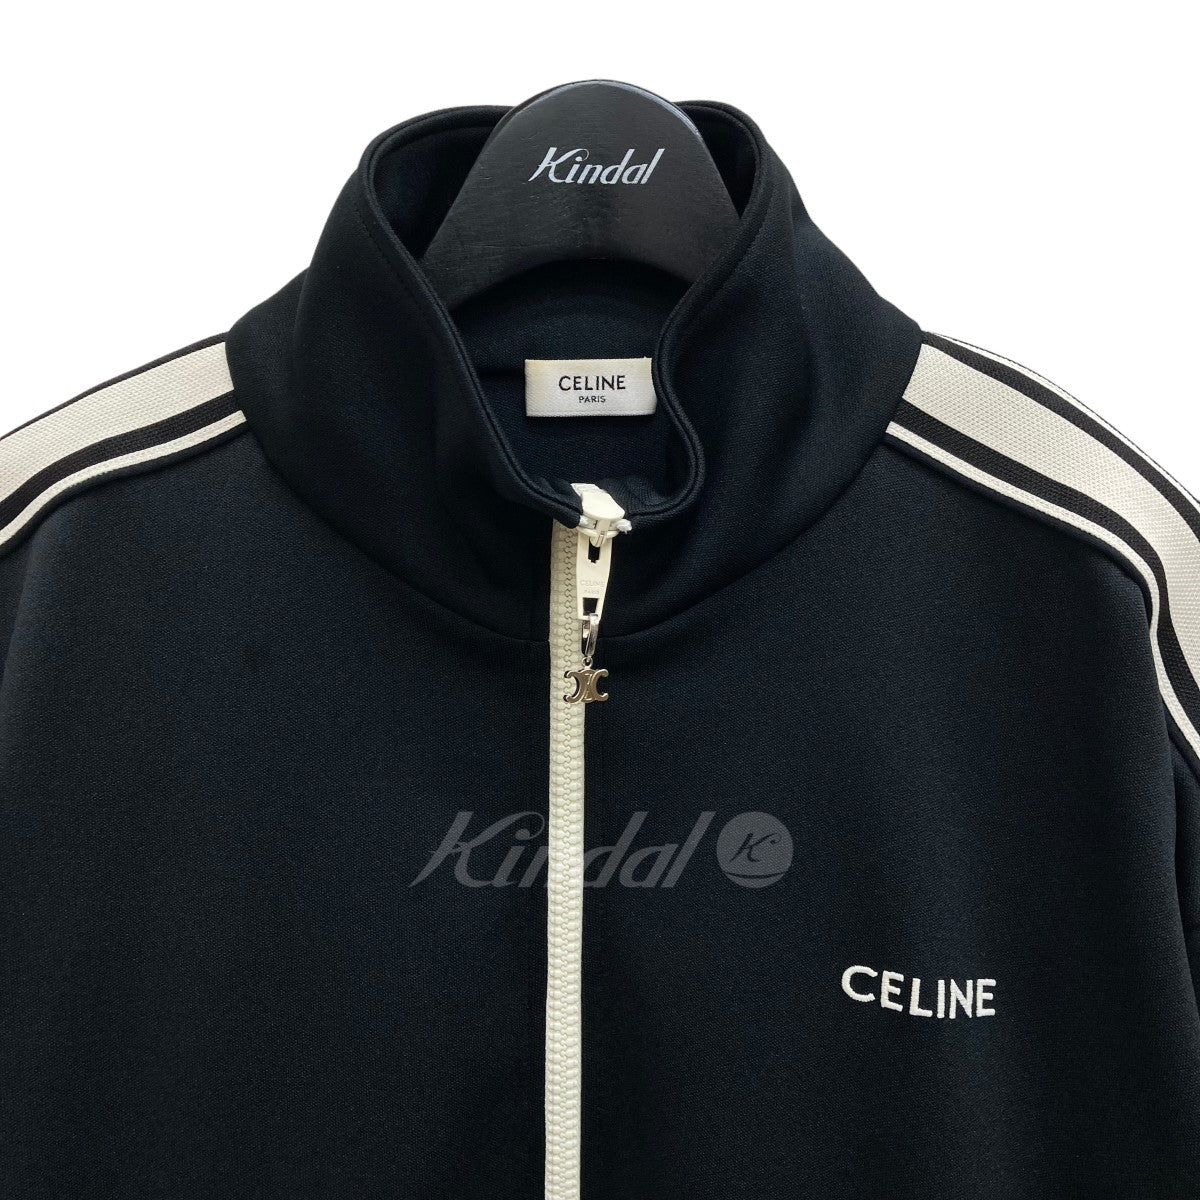 CELINE(セリーヌ) Reversible Athletic Sweatshirt in Jersey トラック ...